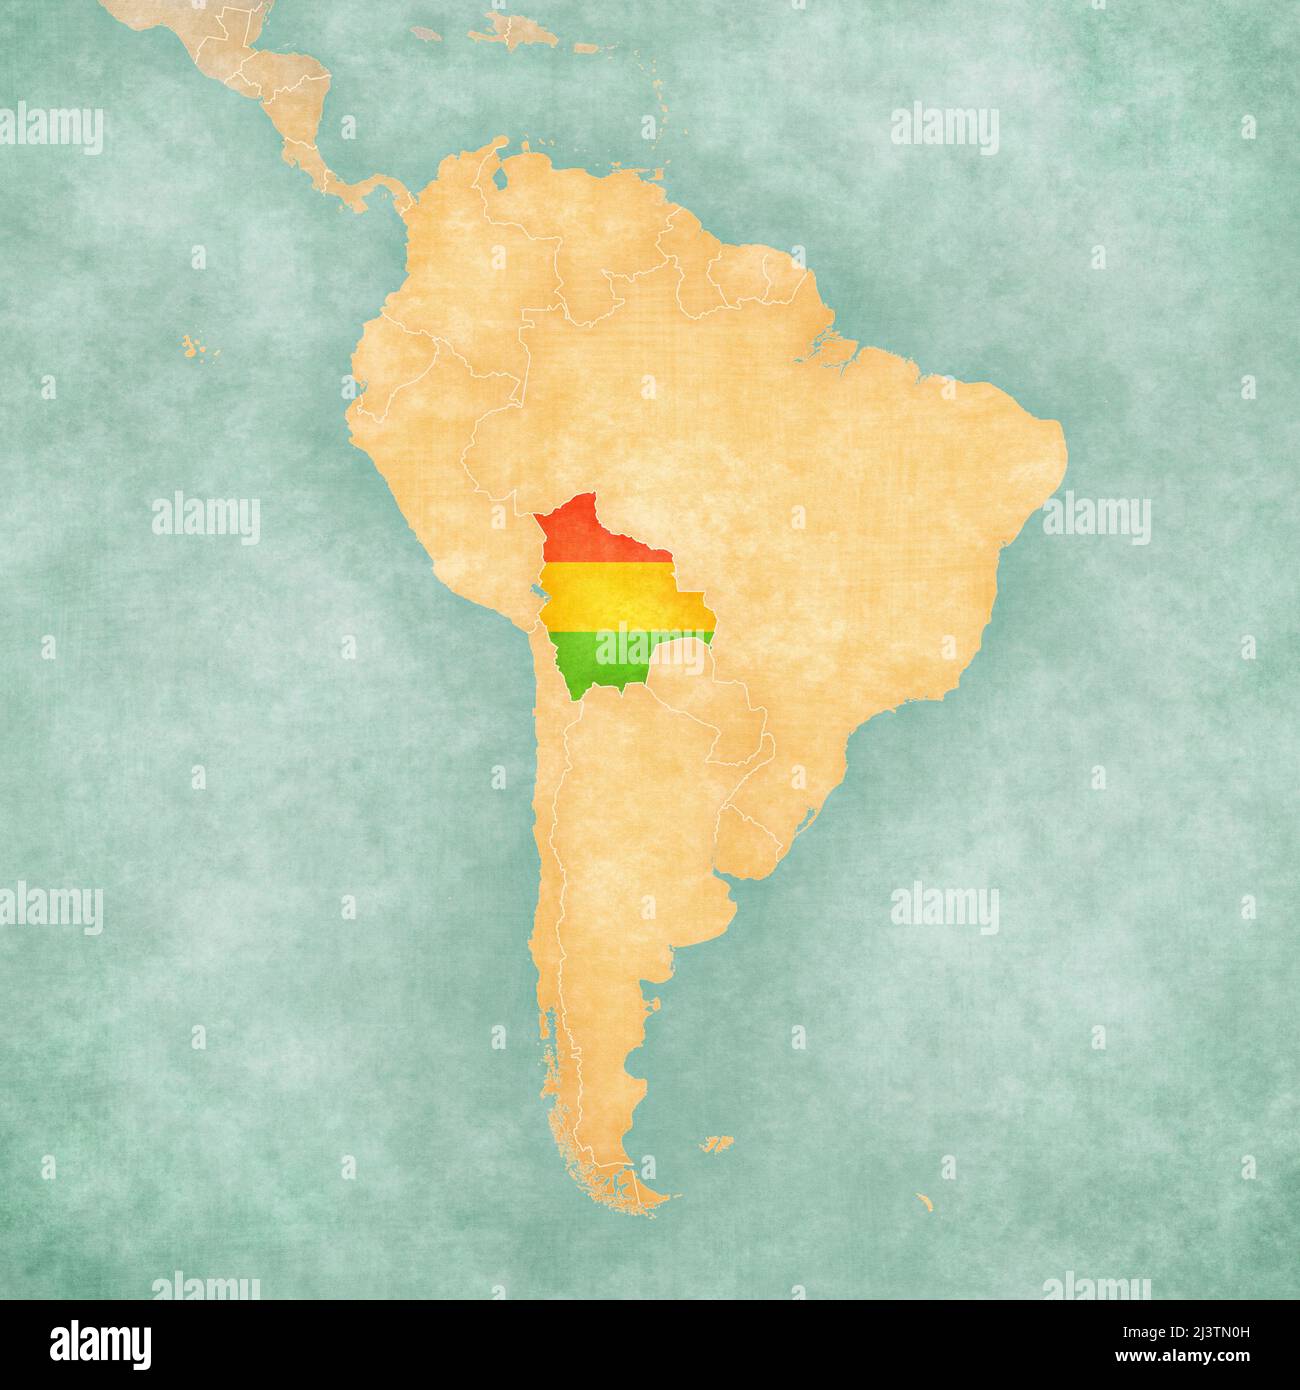 Bolivie (drapeau bolivien) sur la carte de l'Amérique du Sud. La carte est dans un style vintage d'été et d'humeur ensoleillée. La carte a une ambiance douce et vintage Banque D'Images